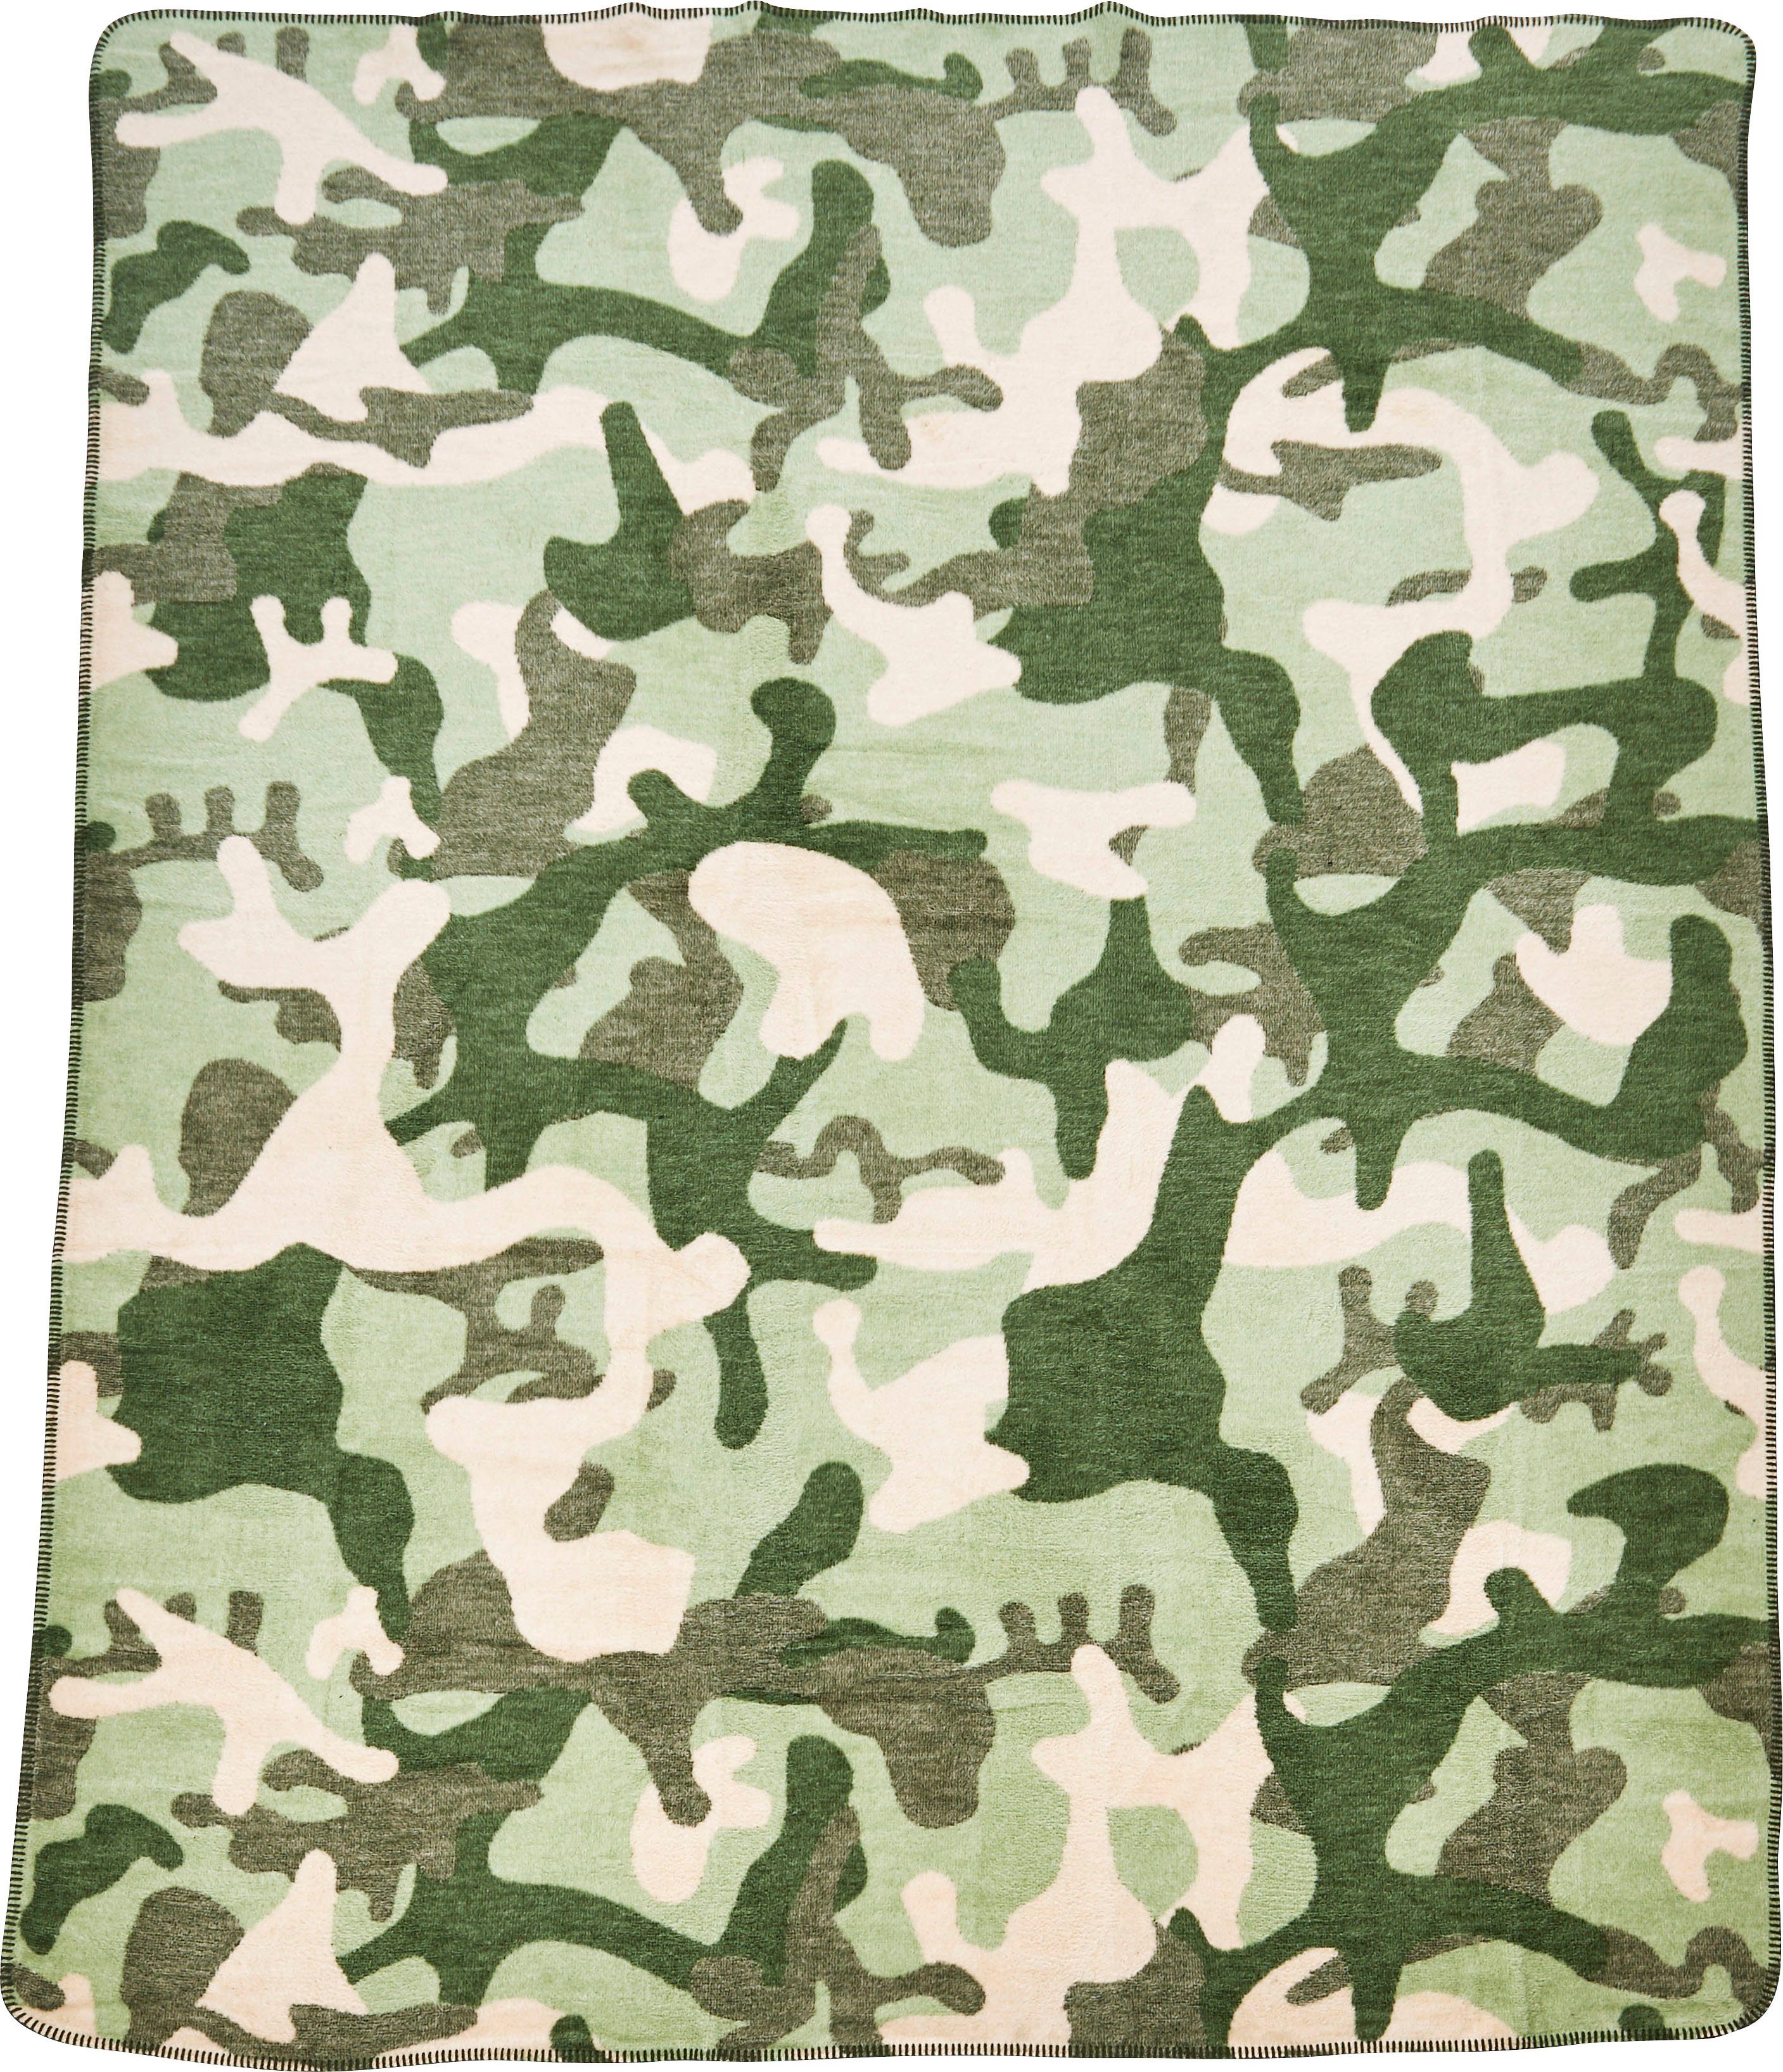 Wohndecke Camouflage, done.®, Wohndecke mit Kuscheldecke einfassender khaki/grün/beige Ziernaht